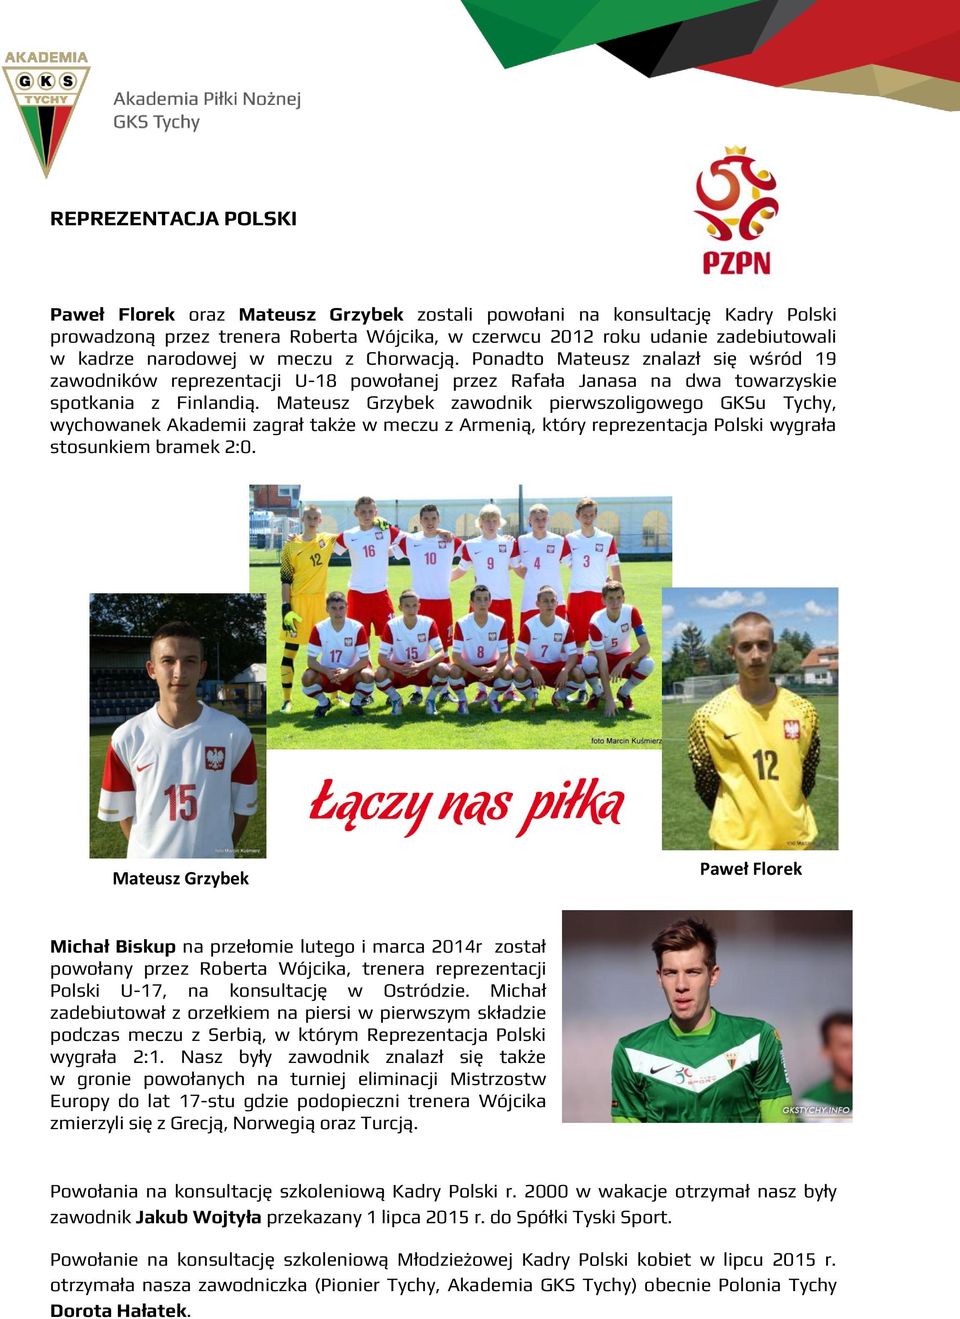 Mateusz Grzybek zawodnik pierwszoligowego GKSu Tychy, wychowanek Akademii zagrał także w meczu z Armenią, który reprezentacja Polski wygrała stosunkiem bramek 2:0.